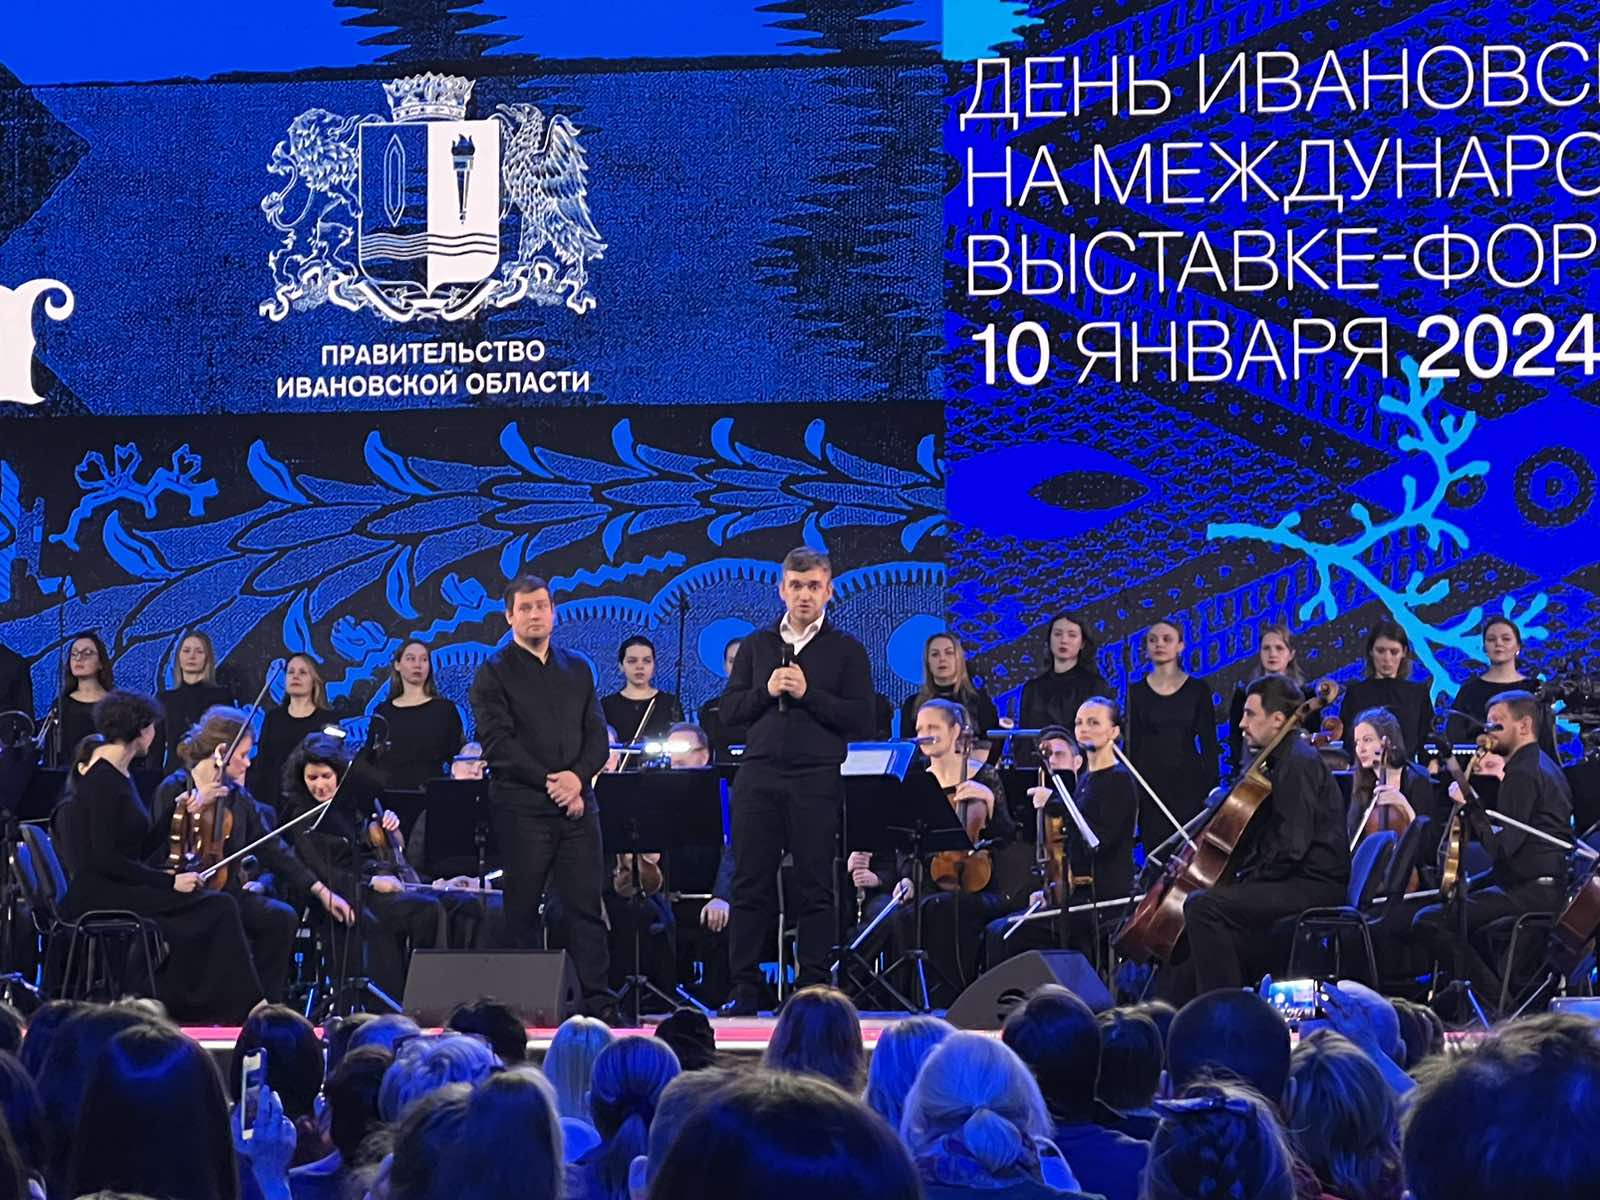 Сегодня на Международной выставке-форуме «Россия» на ВДНХ будет представлен День Ивановской области.